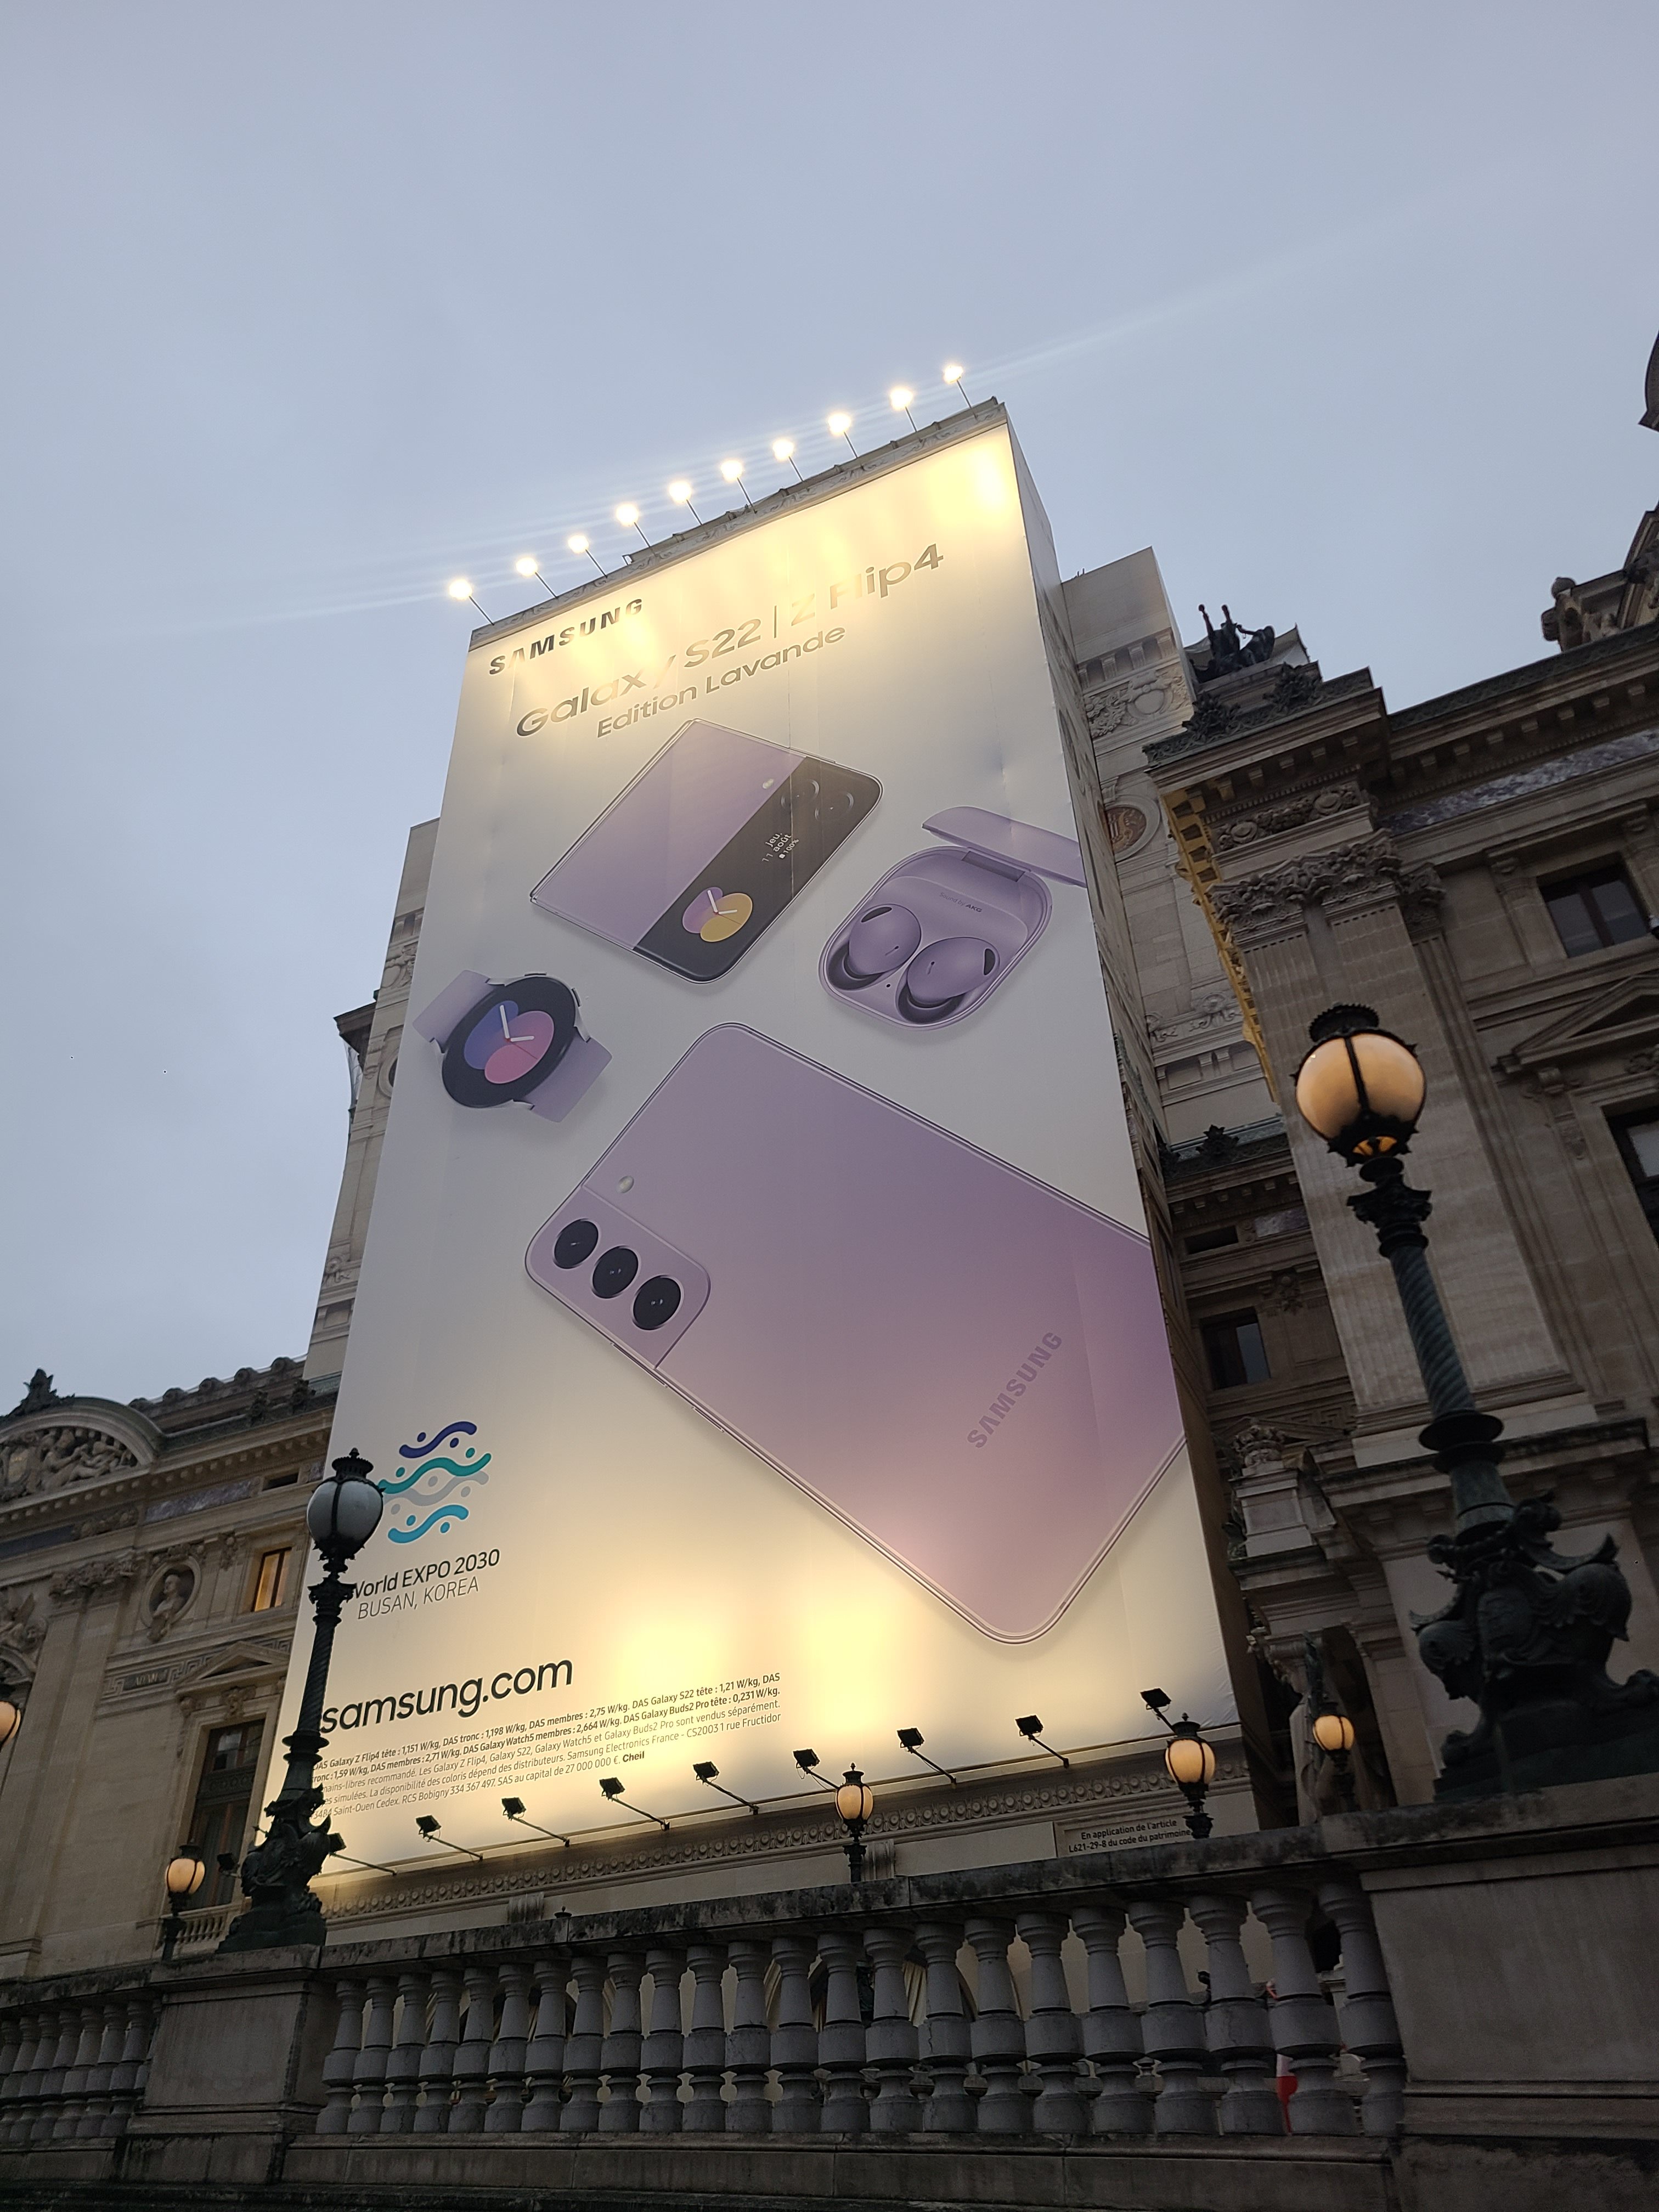 삼성전자가 프랑스 파리 관광 명소인 오페라가르니에 외벽에 설치한 대형 광고판. 삼성전자는 자사 주력 제품을 앞세워 부산엑스포 유치전을 널리 알리기 위해 이 광고판을 제작했다. 박성국 기자